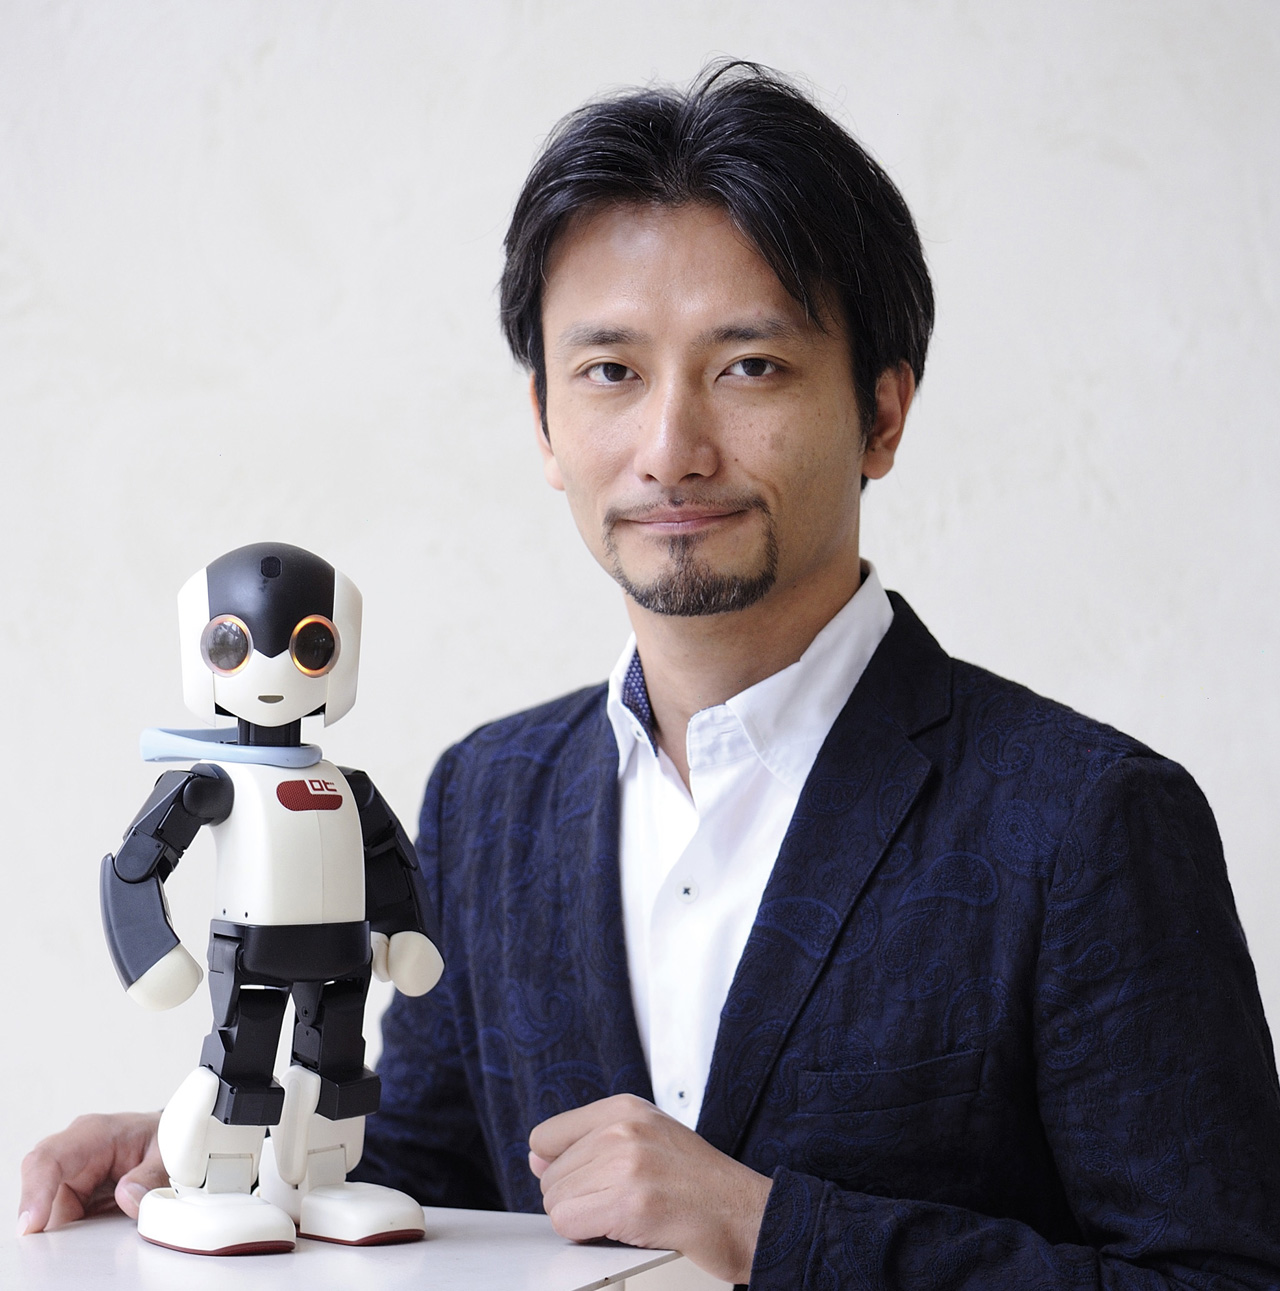 ロビと、ロビをデザイン・設計したロボットクリエイターの高橋智隆さん